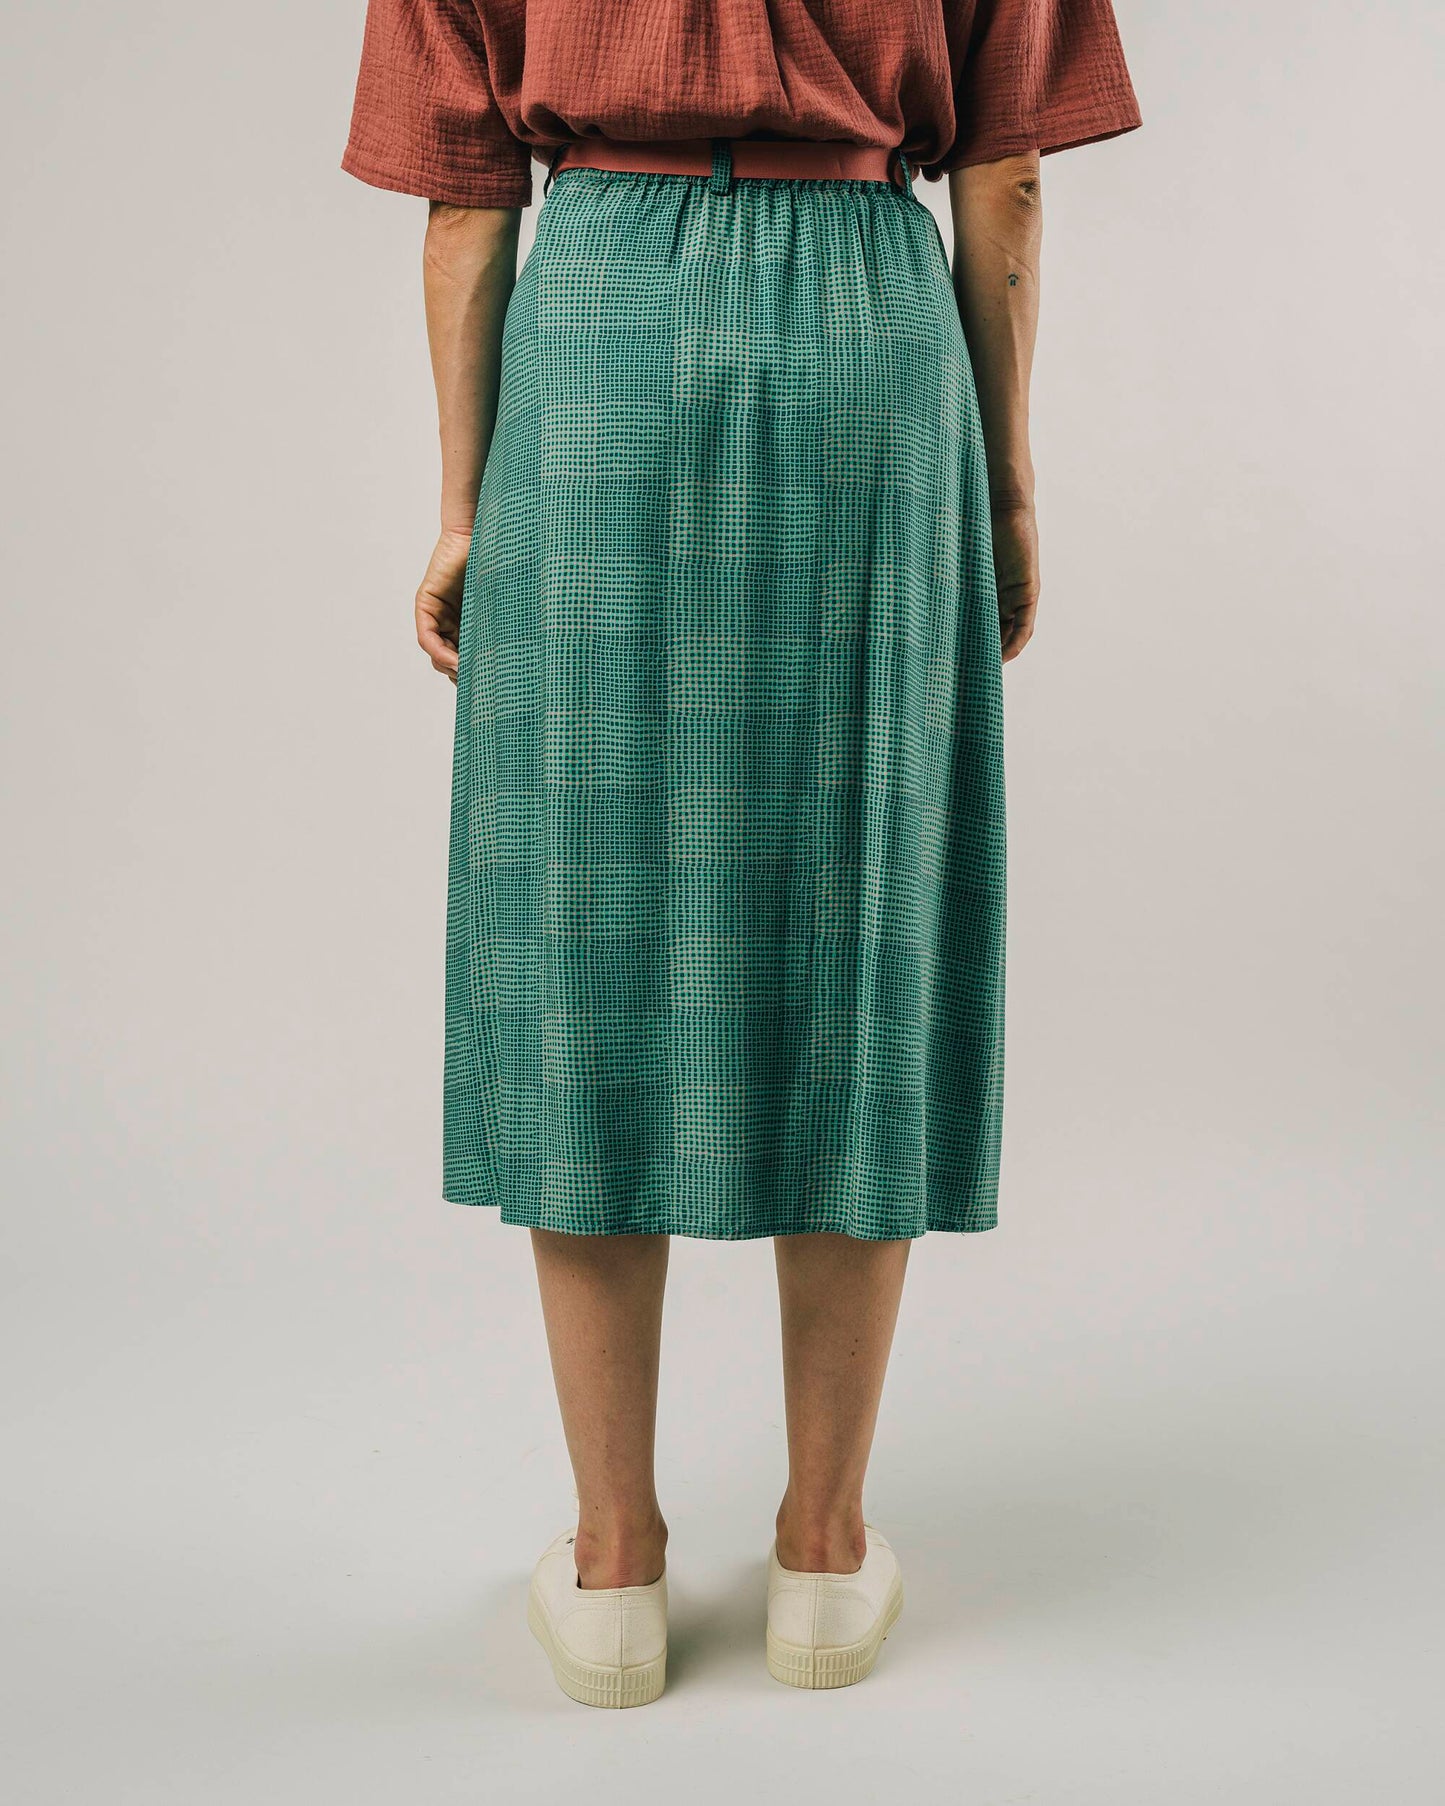 Gingham Skirt Green